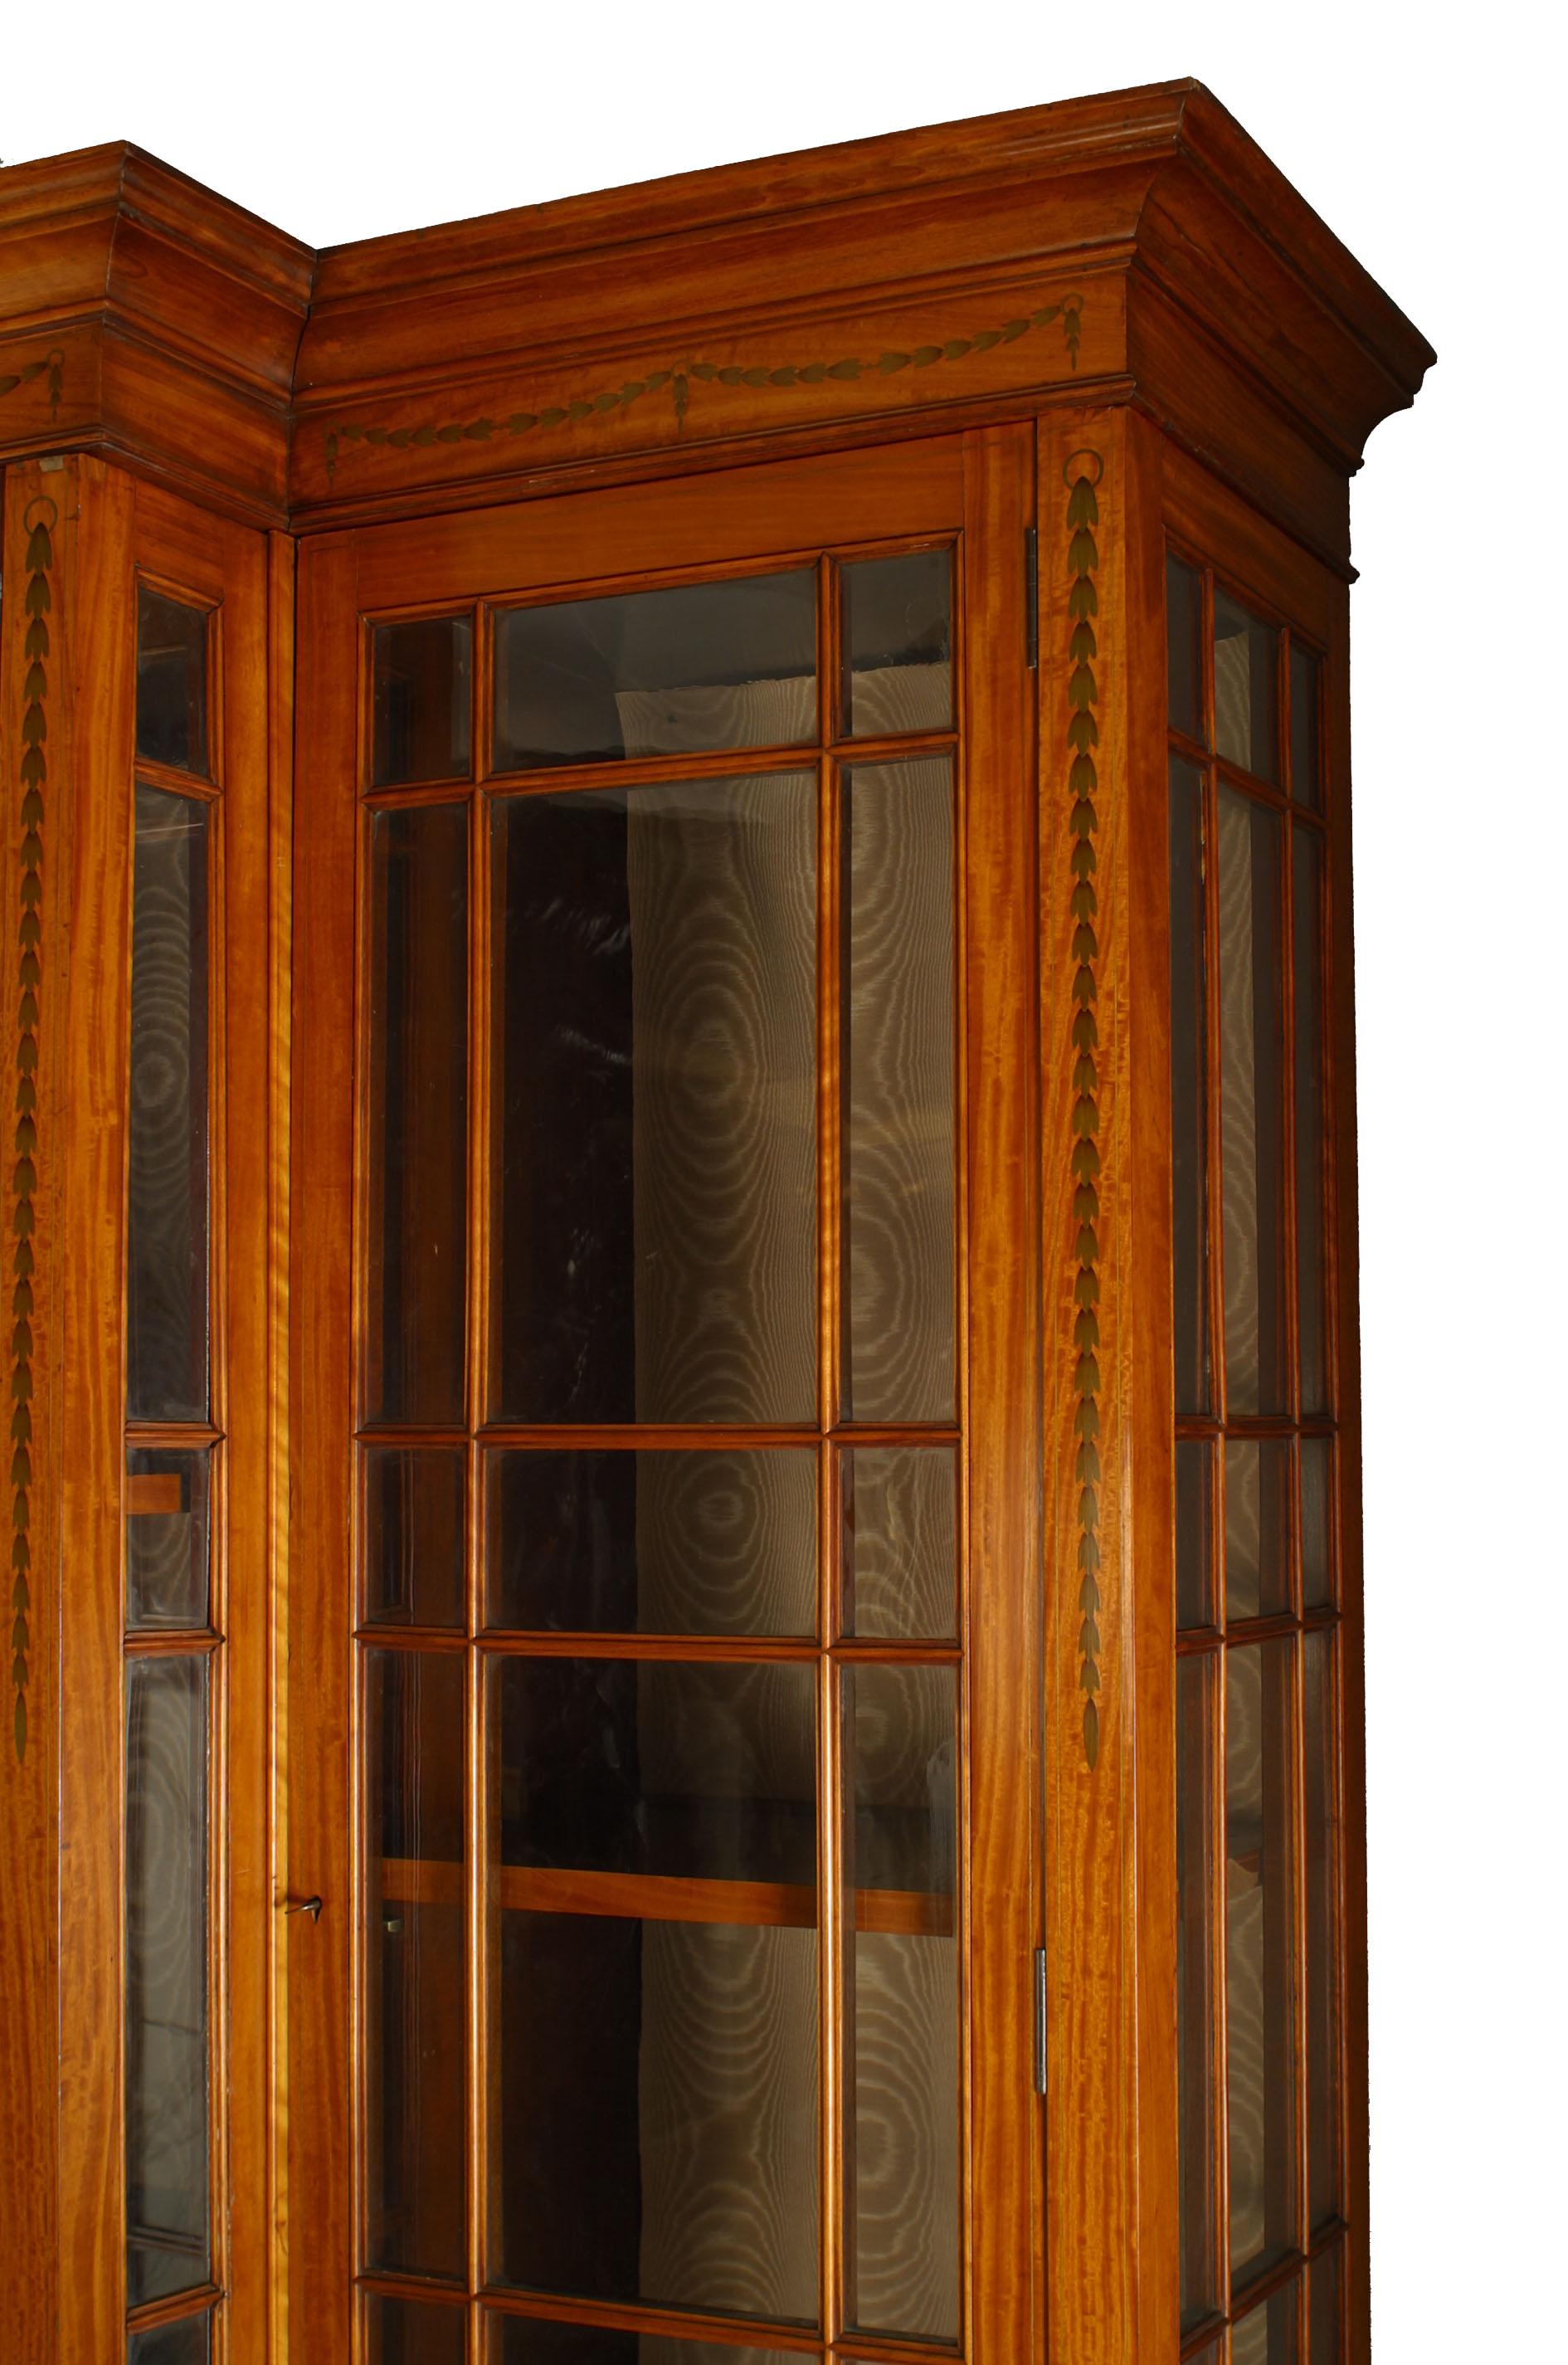 Englischer Schrank aus satiniertem Holz im Sheraton-Stil des 19. Jahrhunderts mit Gittertüren und -seiten, eingelegtem Feston und Zierleisten sowie 14 Einlegeböden.